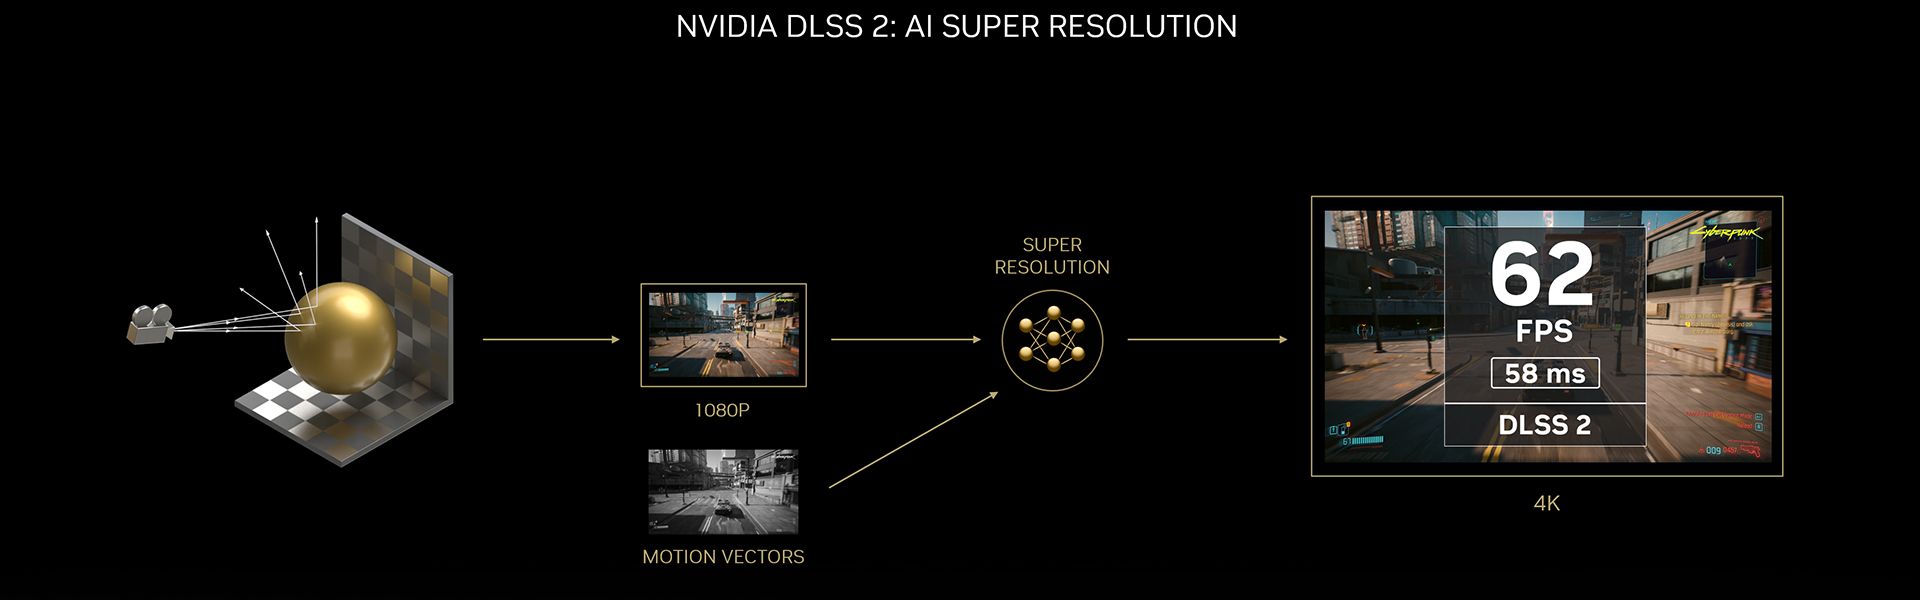 سوپر رزولوشن NVIDIA DLSS 3